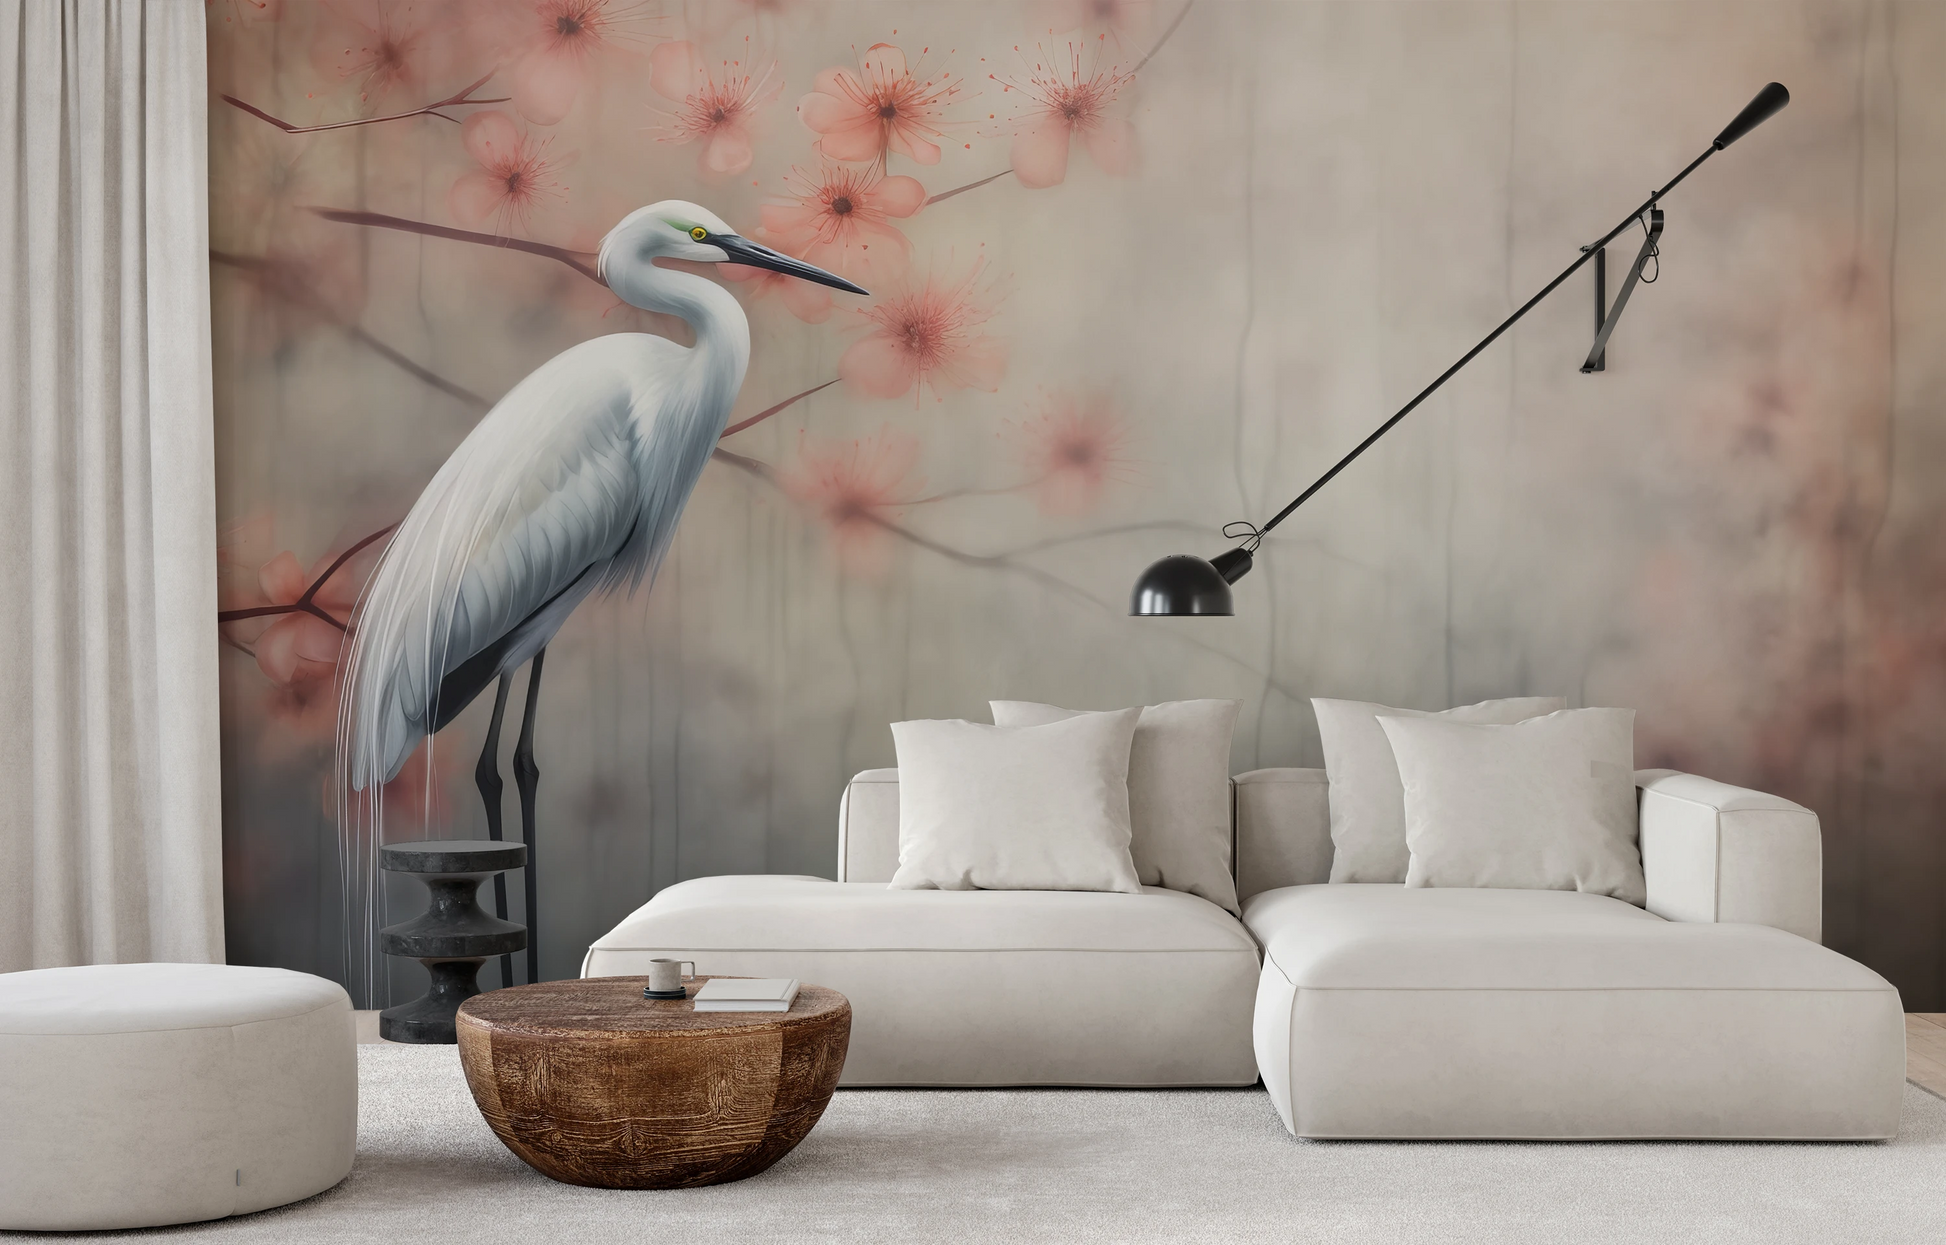 Fototapeta malowana o nazwie Peaceful Heron pokazana w aranżacji wnętrza.